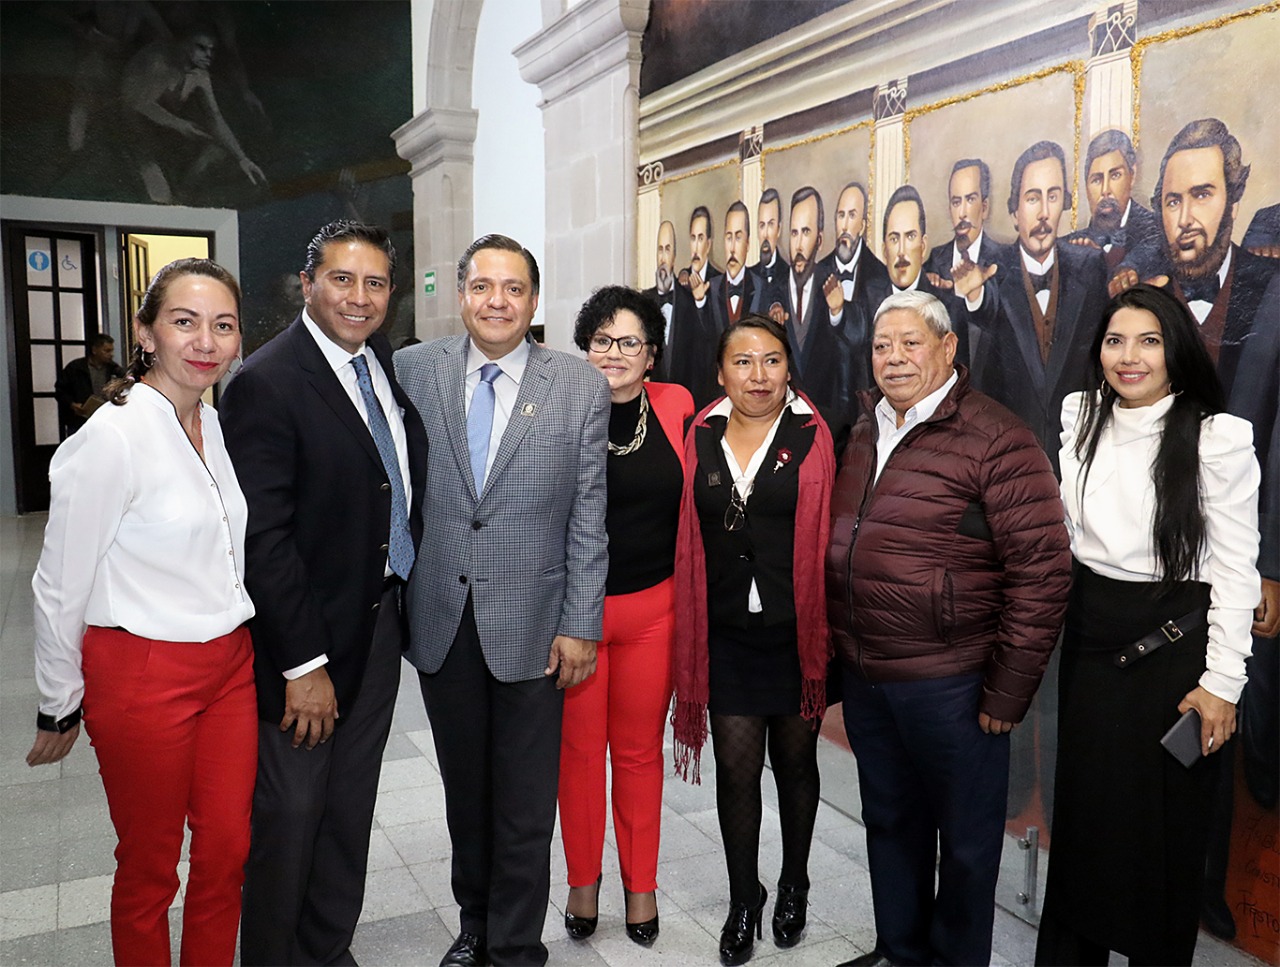 Aprueba Legislatura local creación del Instituto Municipal de la Mujer de Toluca